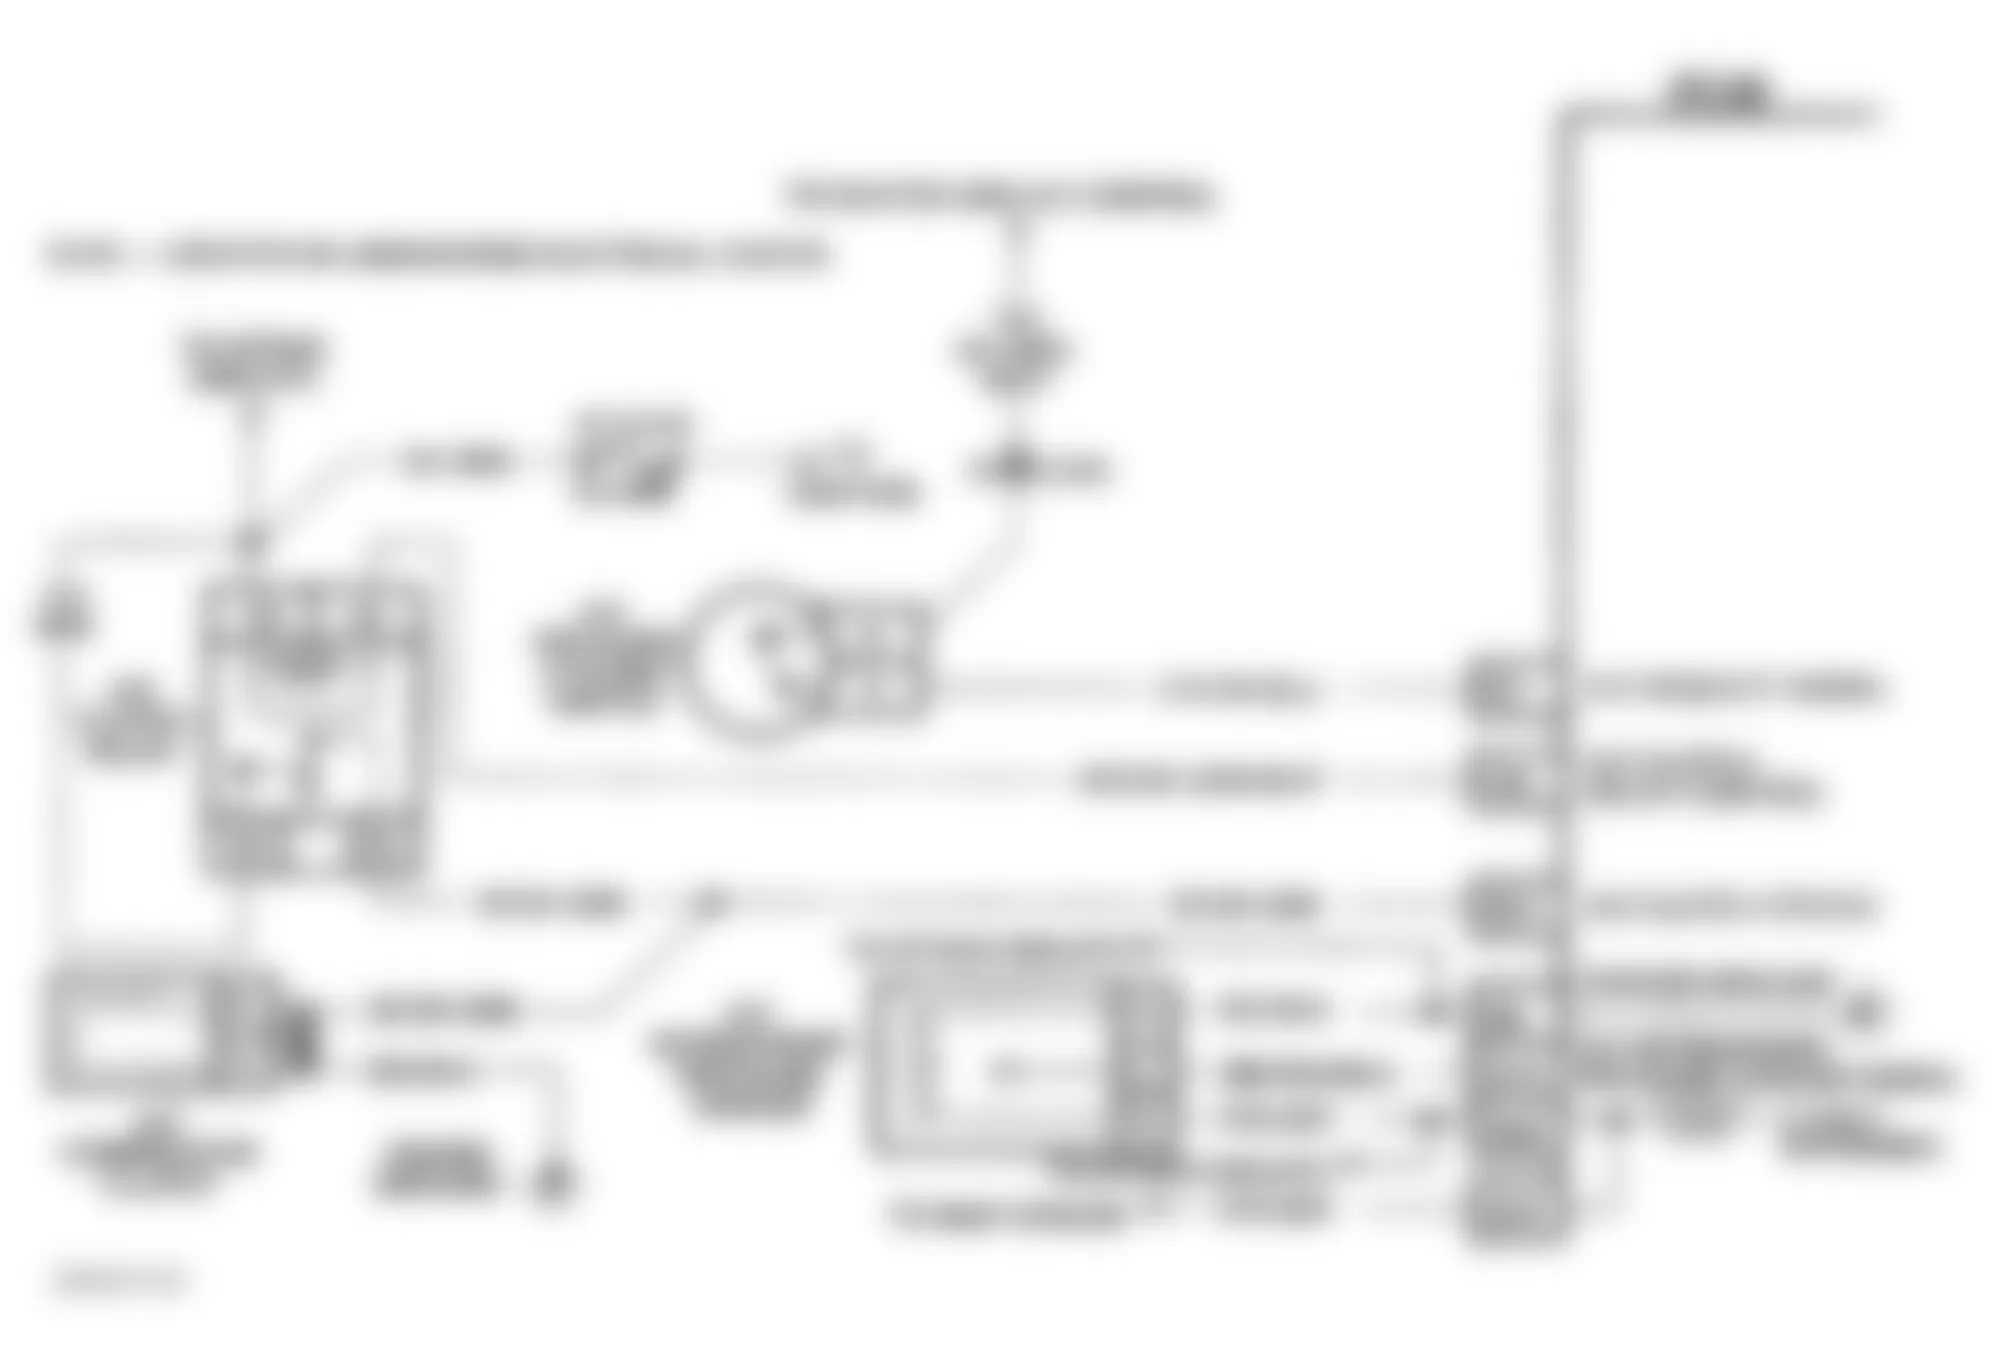 Buick Roadmaster Estate Wagon 1994 - Component Locations -  Code 66 Schematic (5.7L) A/C Pressure Sensor